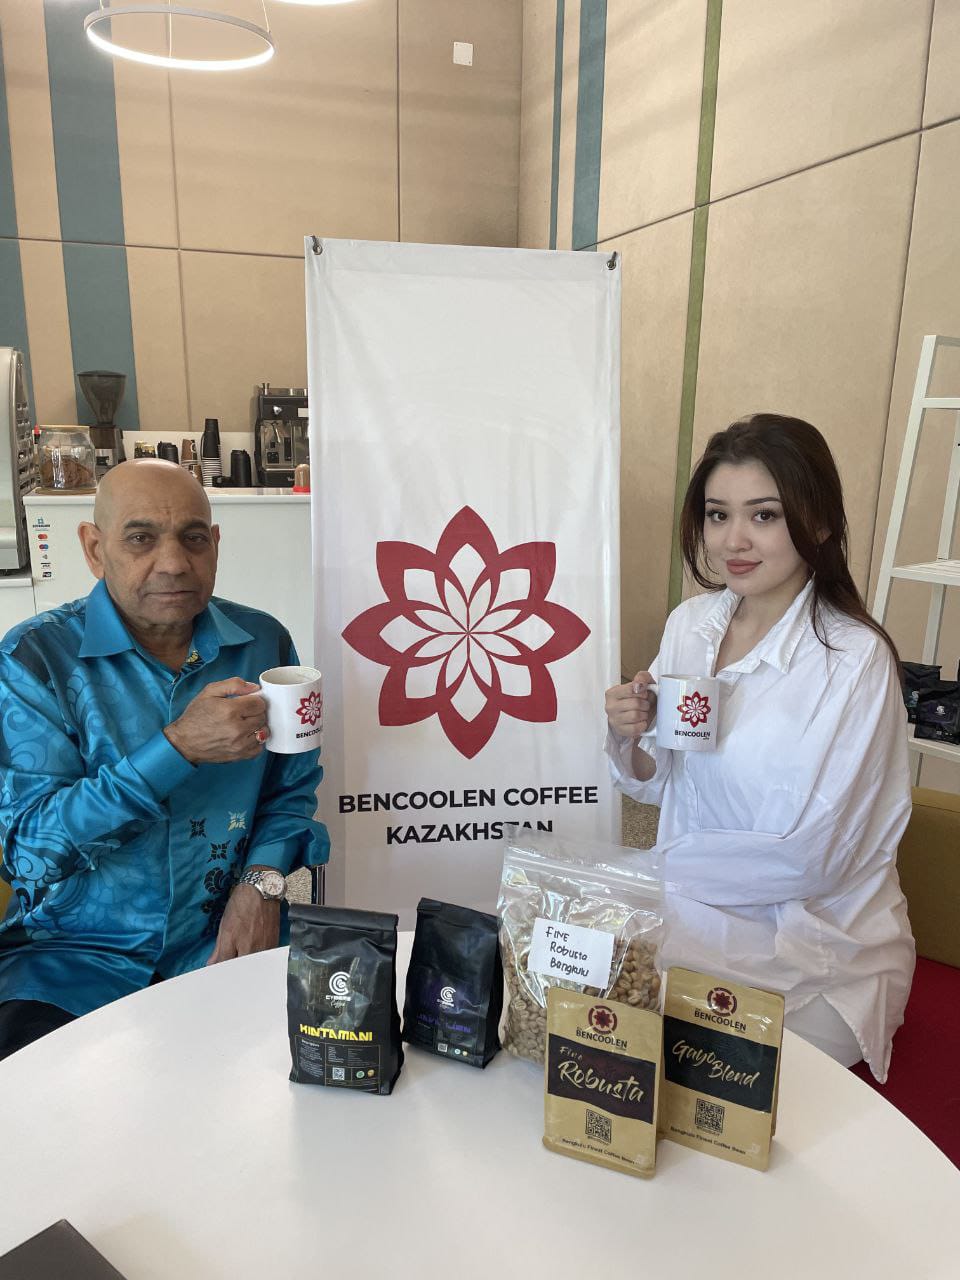 Dayana Assembayeva Jadi Brand Ambassador Kopi Bengkulu di Kazakhstan